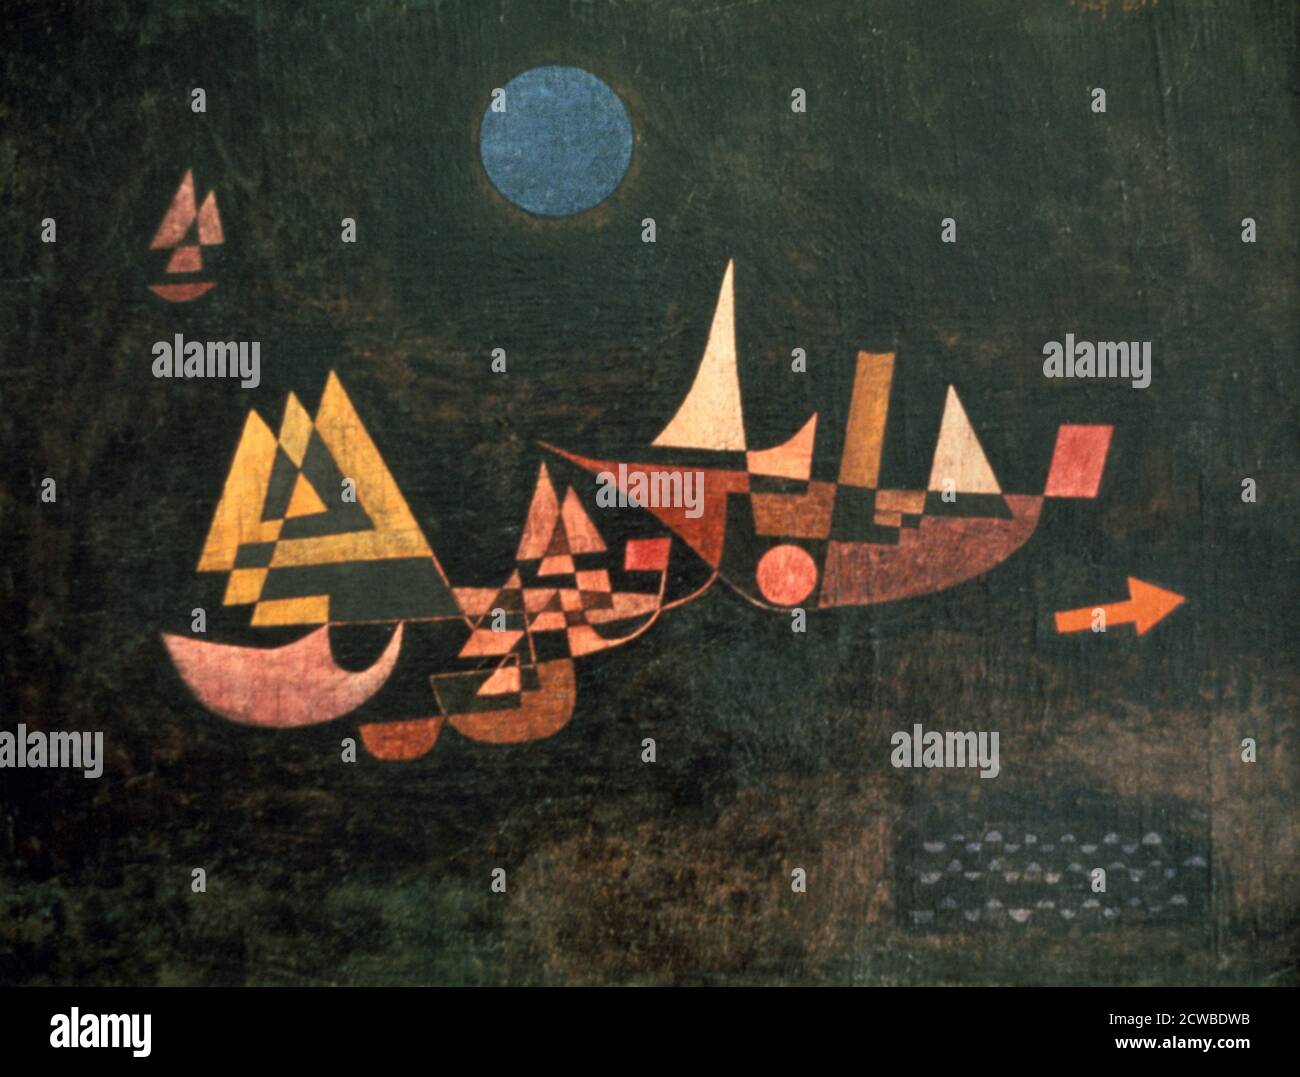 The Ships Depart', 1927. Künstler: Paul Klee. Paul Klee (1879-1940) war ein in der Schweiz geborener Künstler. Sein höchst individueller Stil wurde von Kunstbewegungen beeinflusst, die Expressionismus, Kubismus und Surrealismus einschloss. Stockfoto